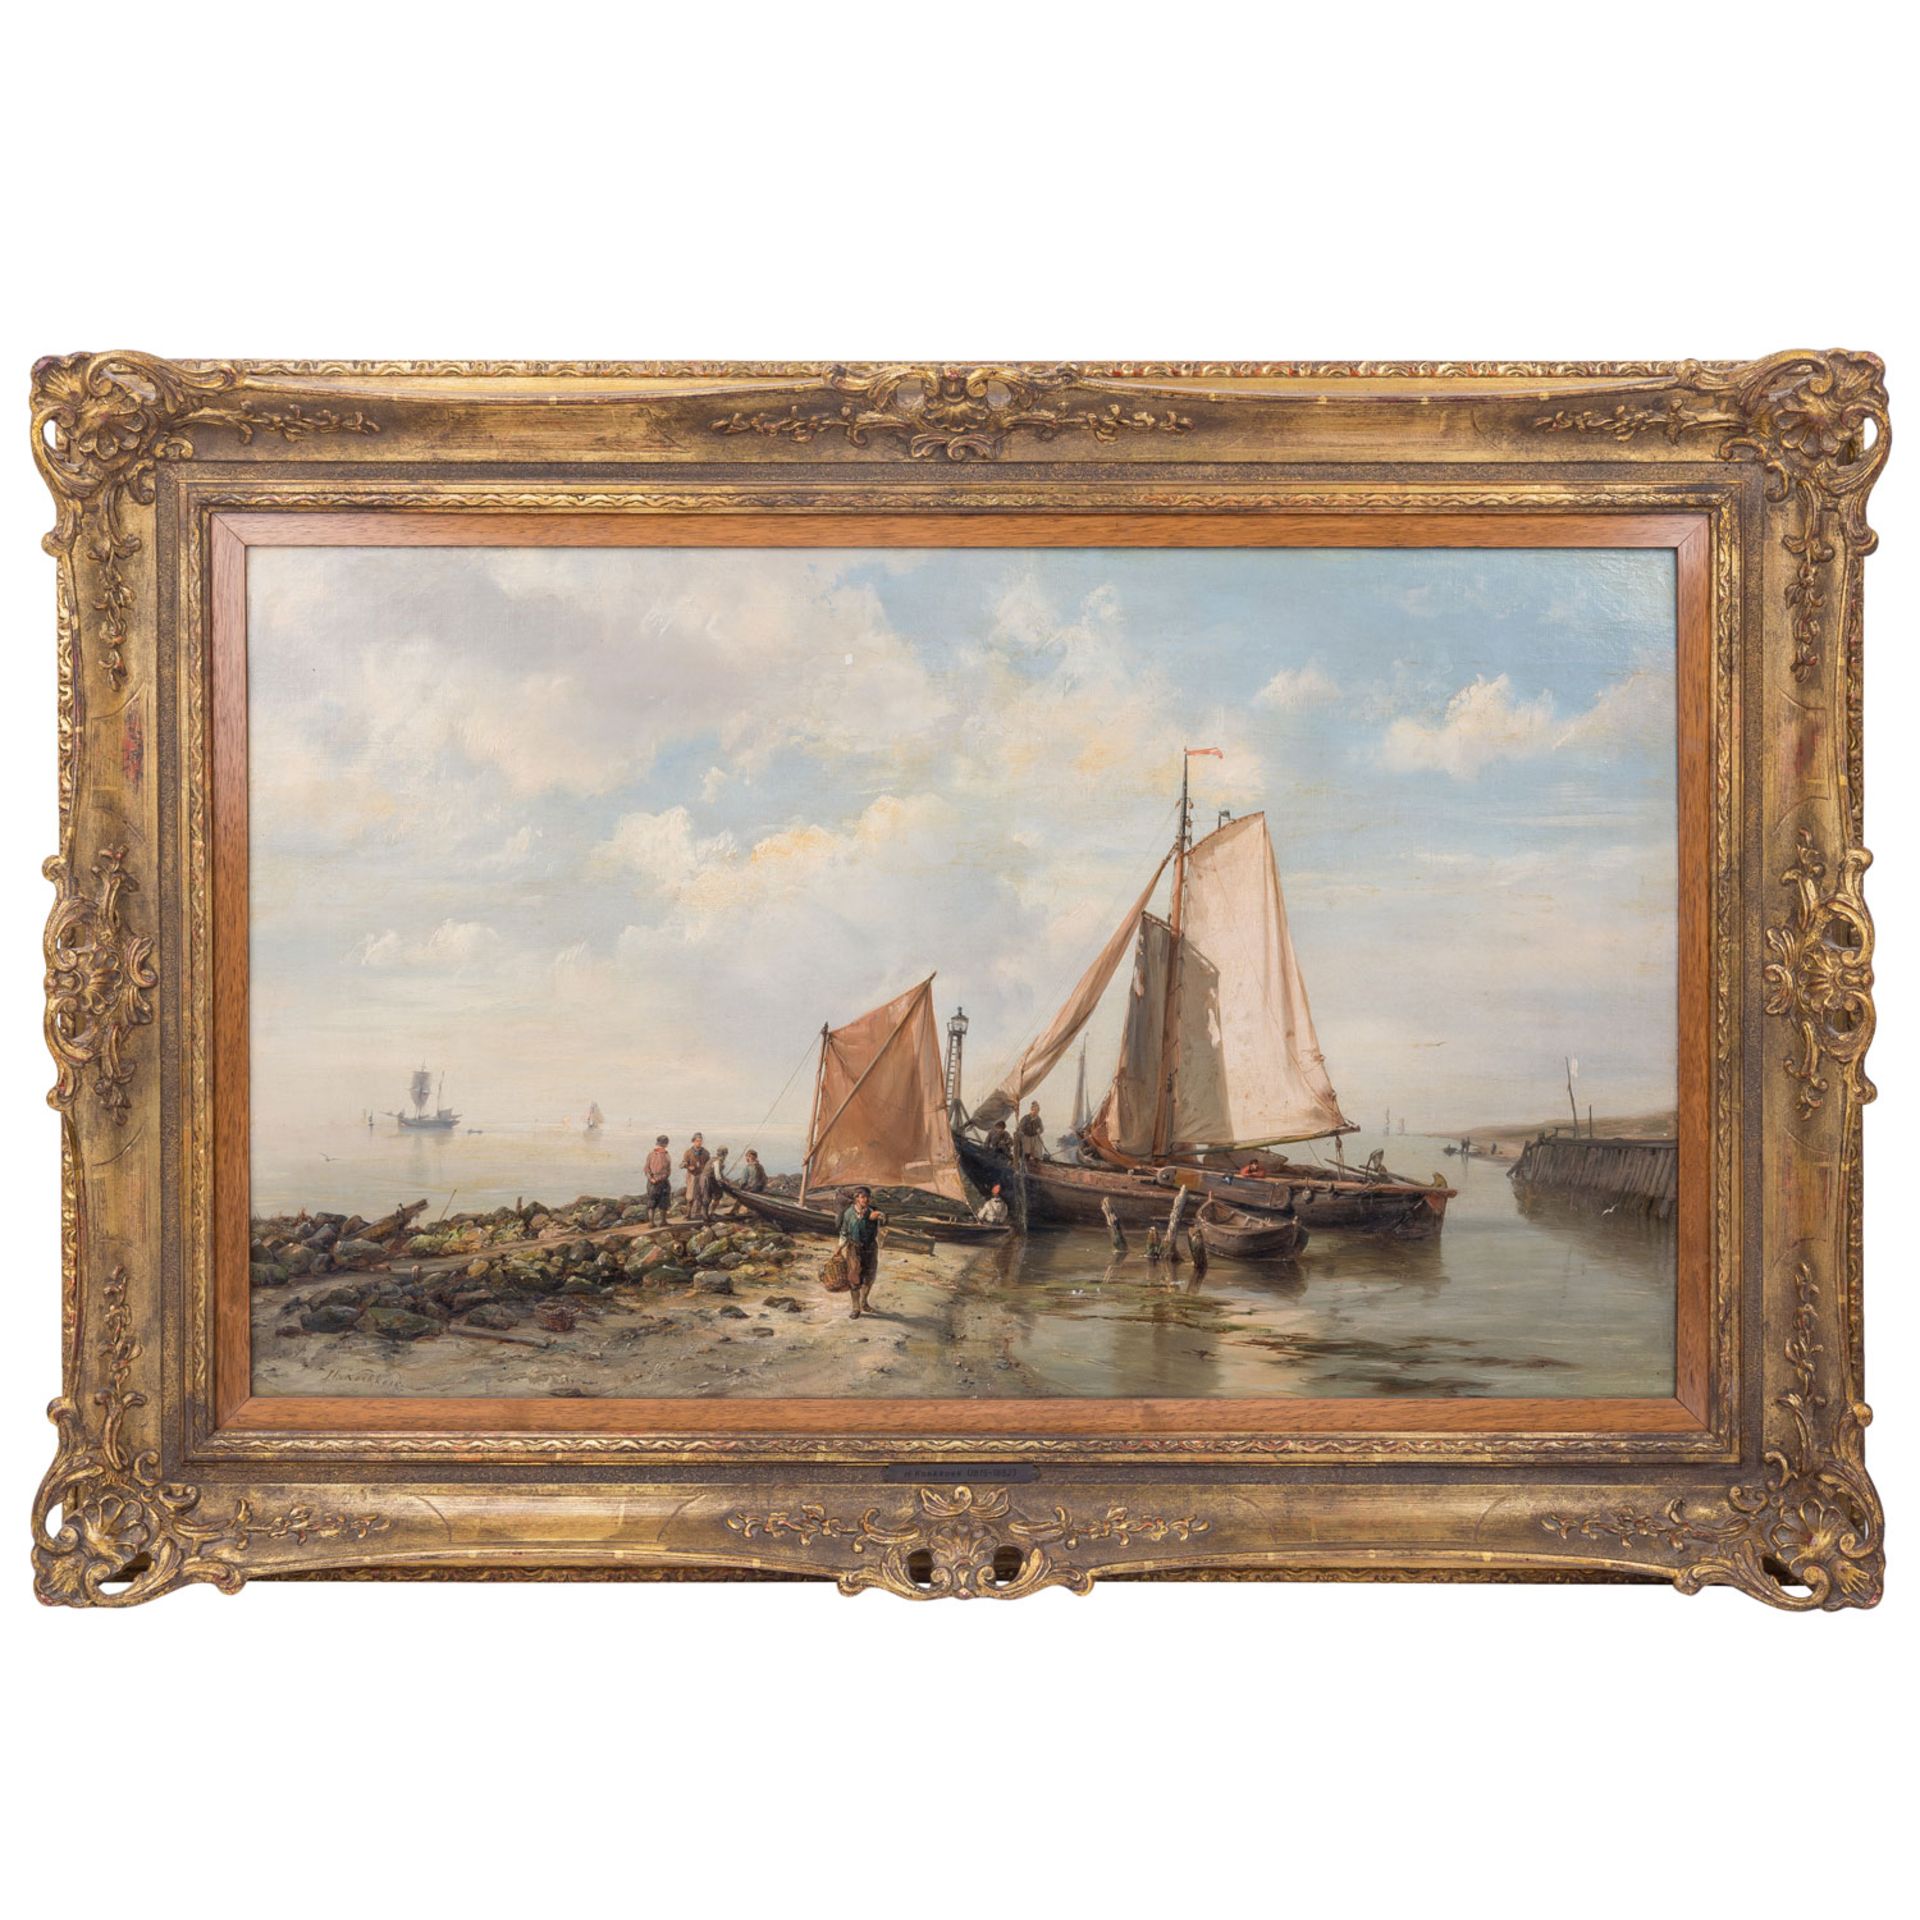 KOEKKOEK, HERMANUS I (1815-1882), "Fischer mit ihren Booten am Strand", - Bild 2 aus 7